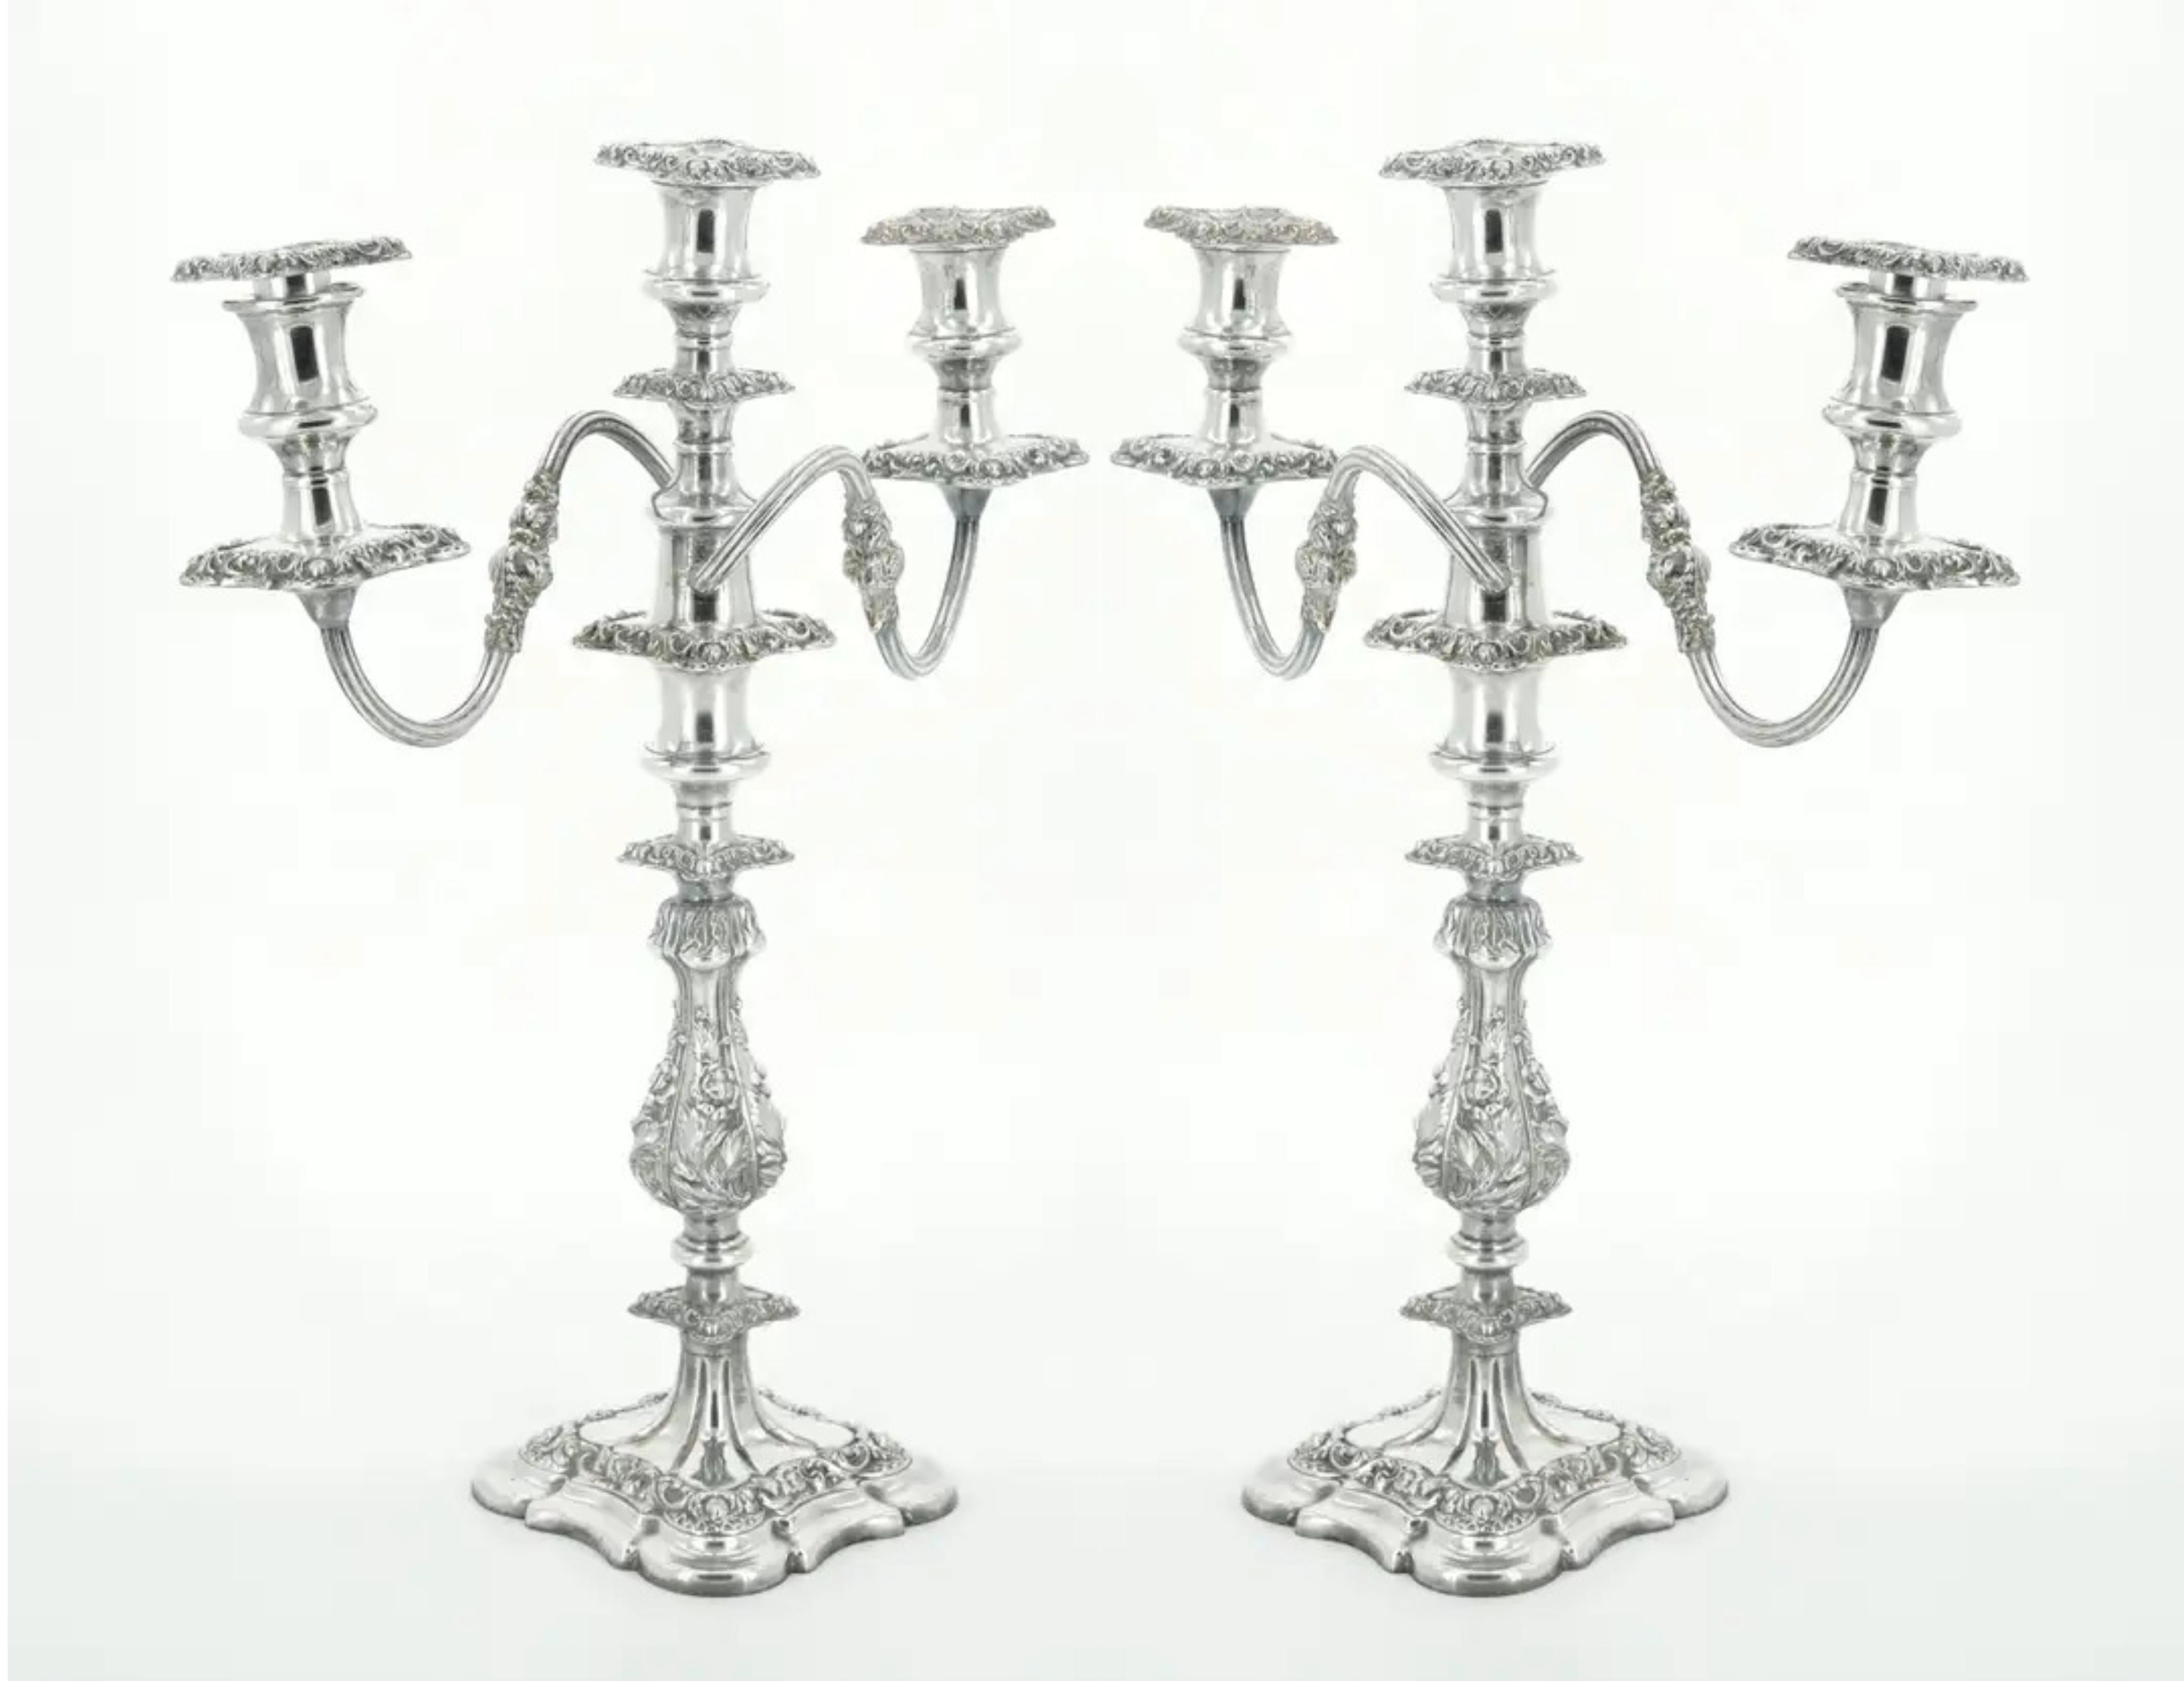 Plongez dans la grandeur du milieu du XIXe siècle avec notre paire distinguée de chandeliers de table à trois lumières en métal argenté de la période édouardienne, style George III. Ce duo exceptionnel respire l'opulence, avec des détails floraux et